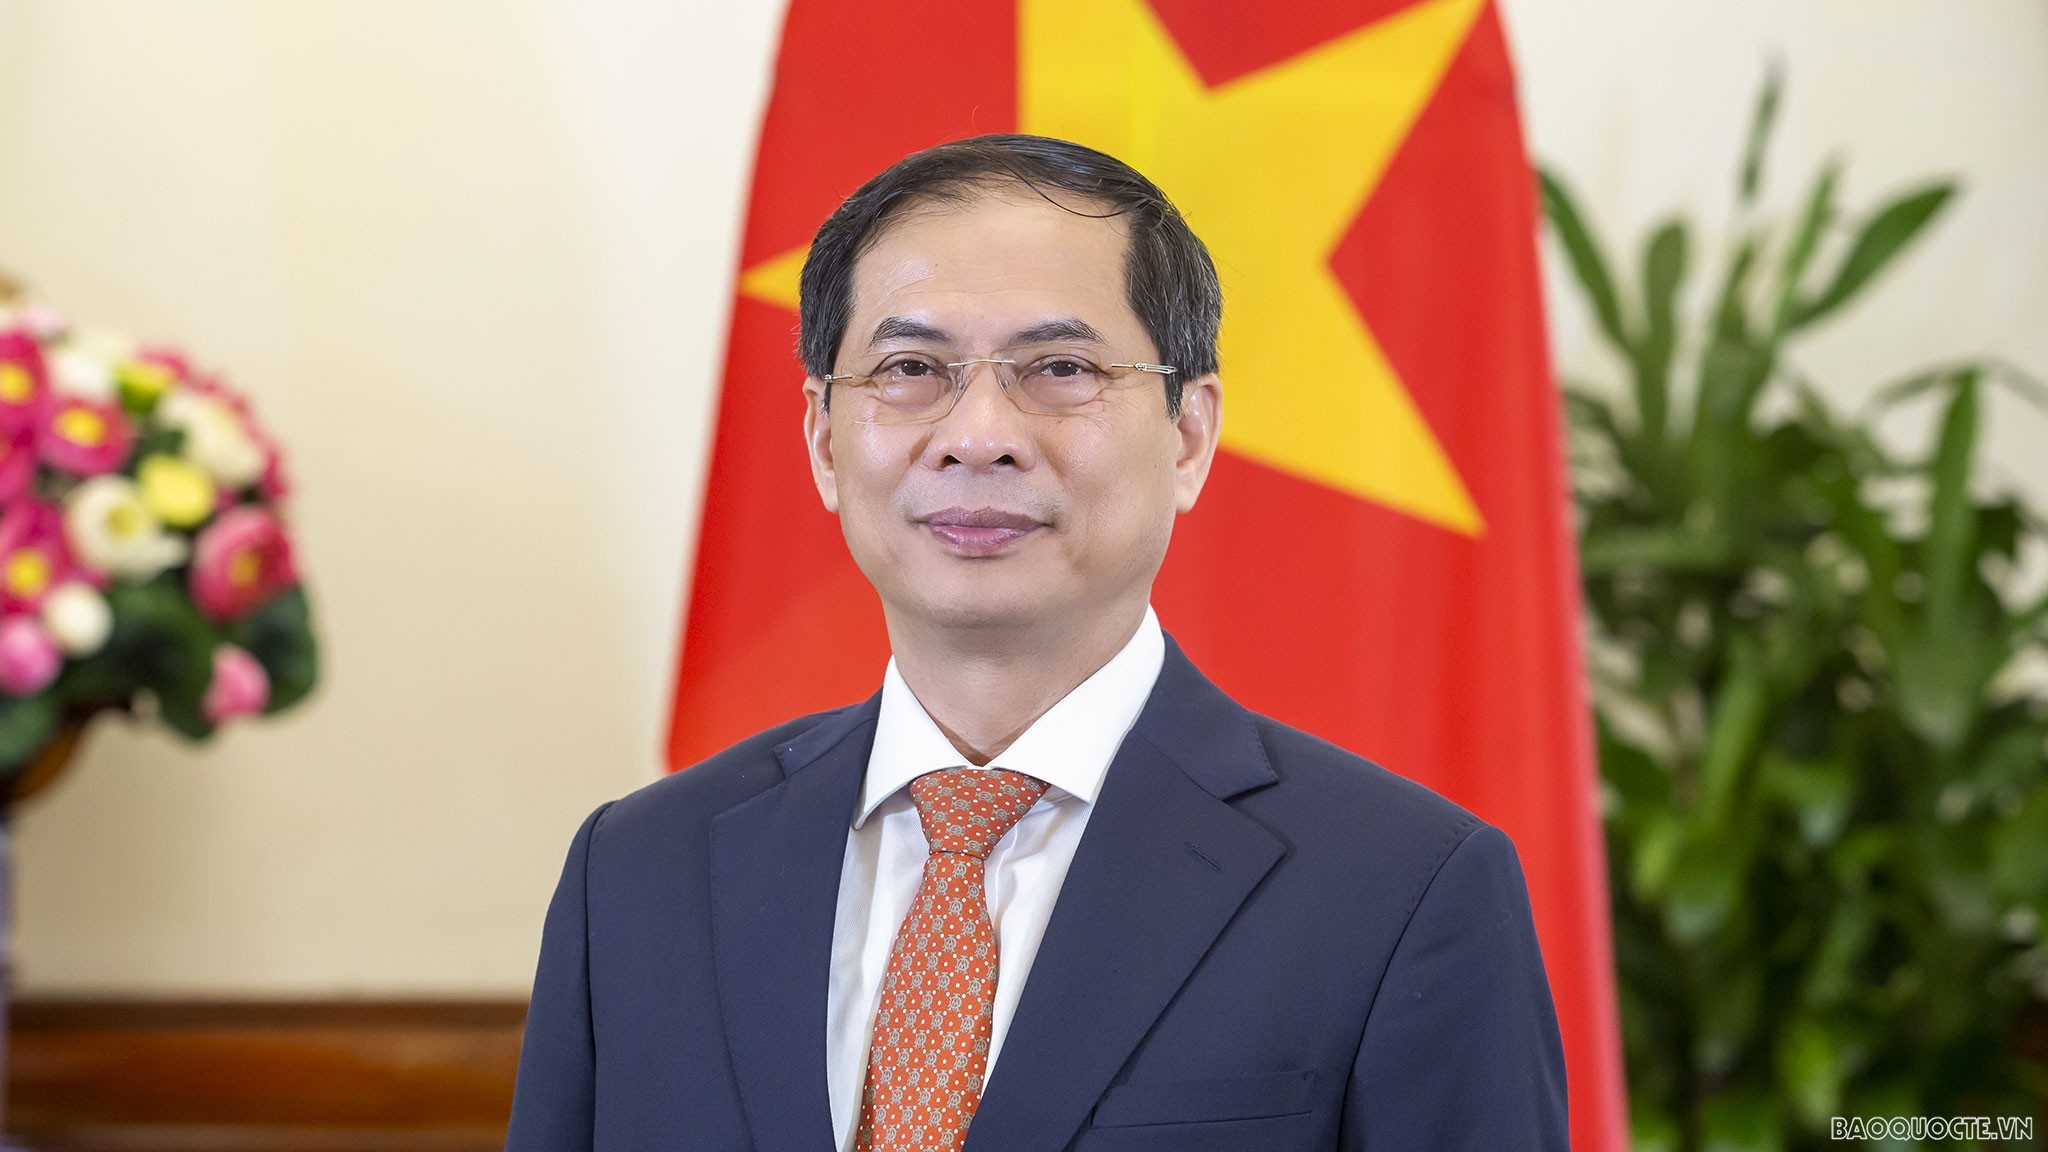 Bộ trưởng Bùi Thanh Sơn gửi thư tới các cơ quan đại diện Việt Nam trước diễn biến mới của dịch Covid-19